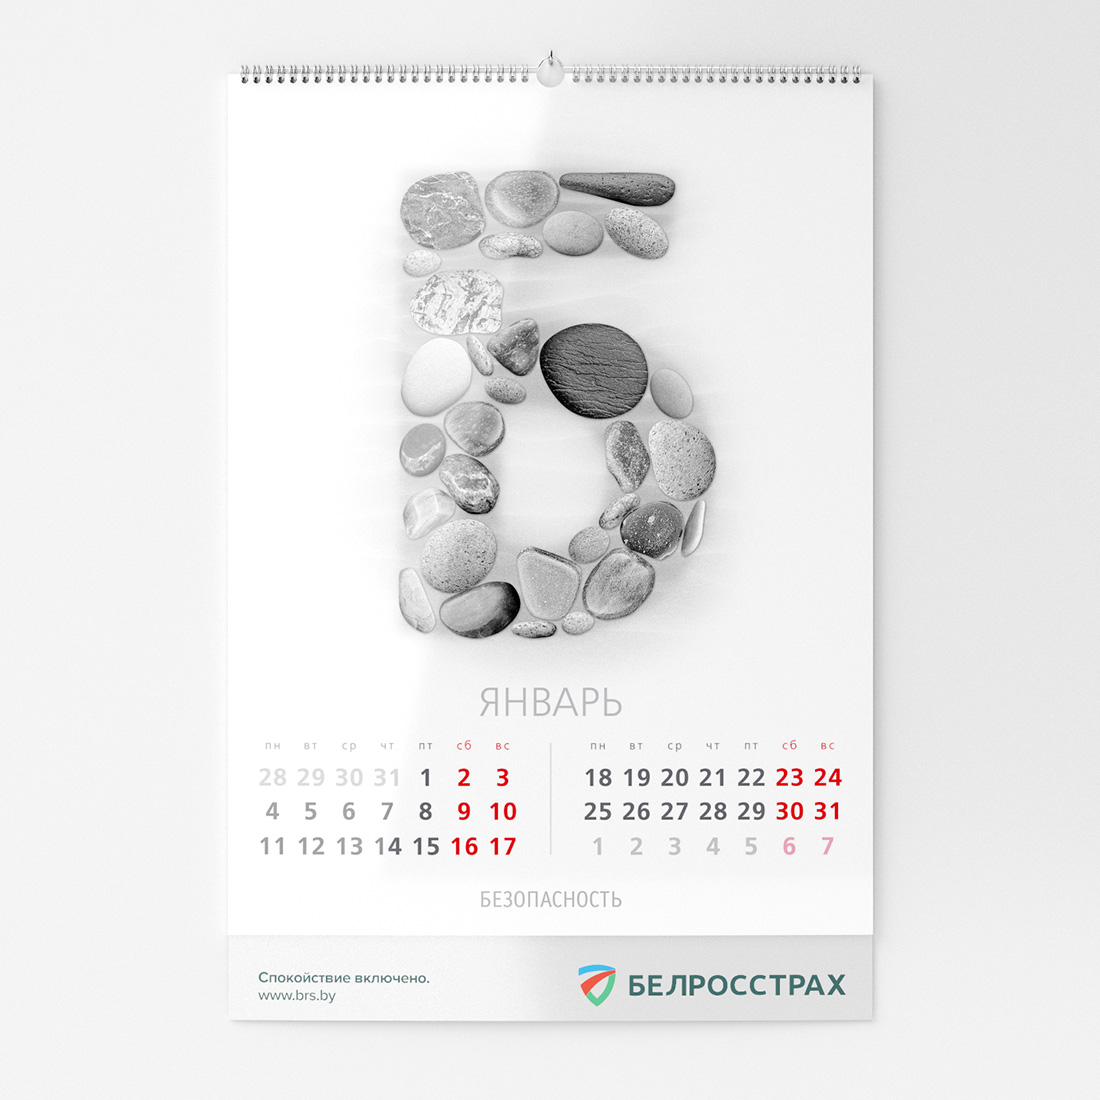 Белросстрах - календарь 2016 «Ассоциации»